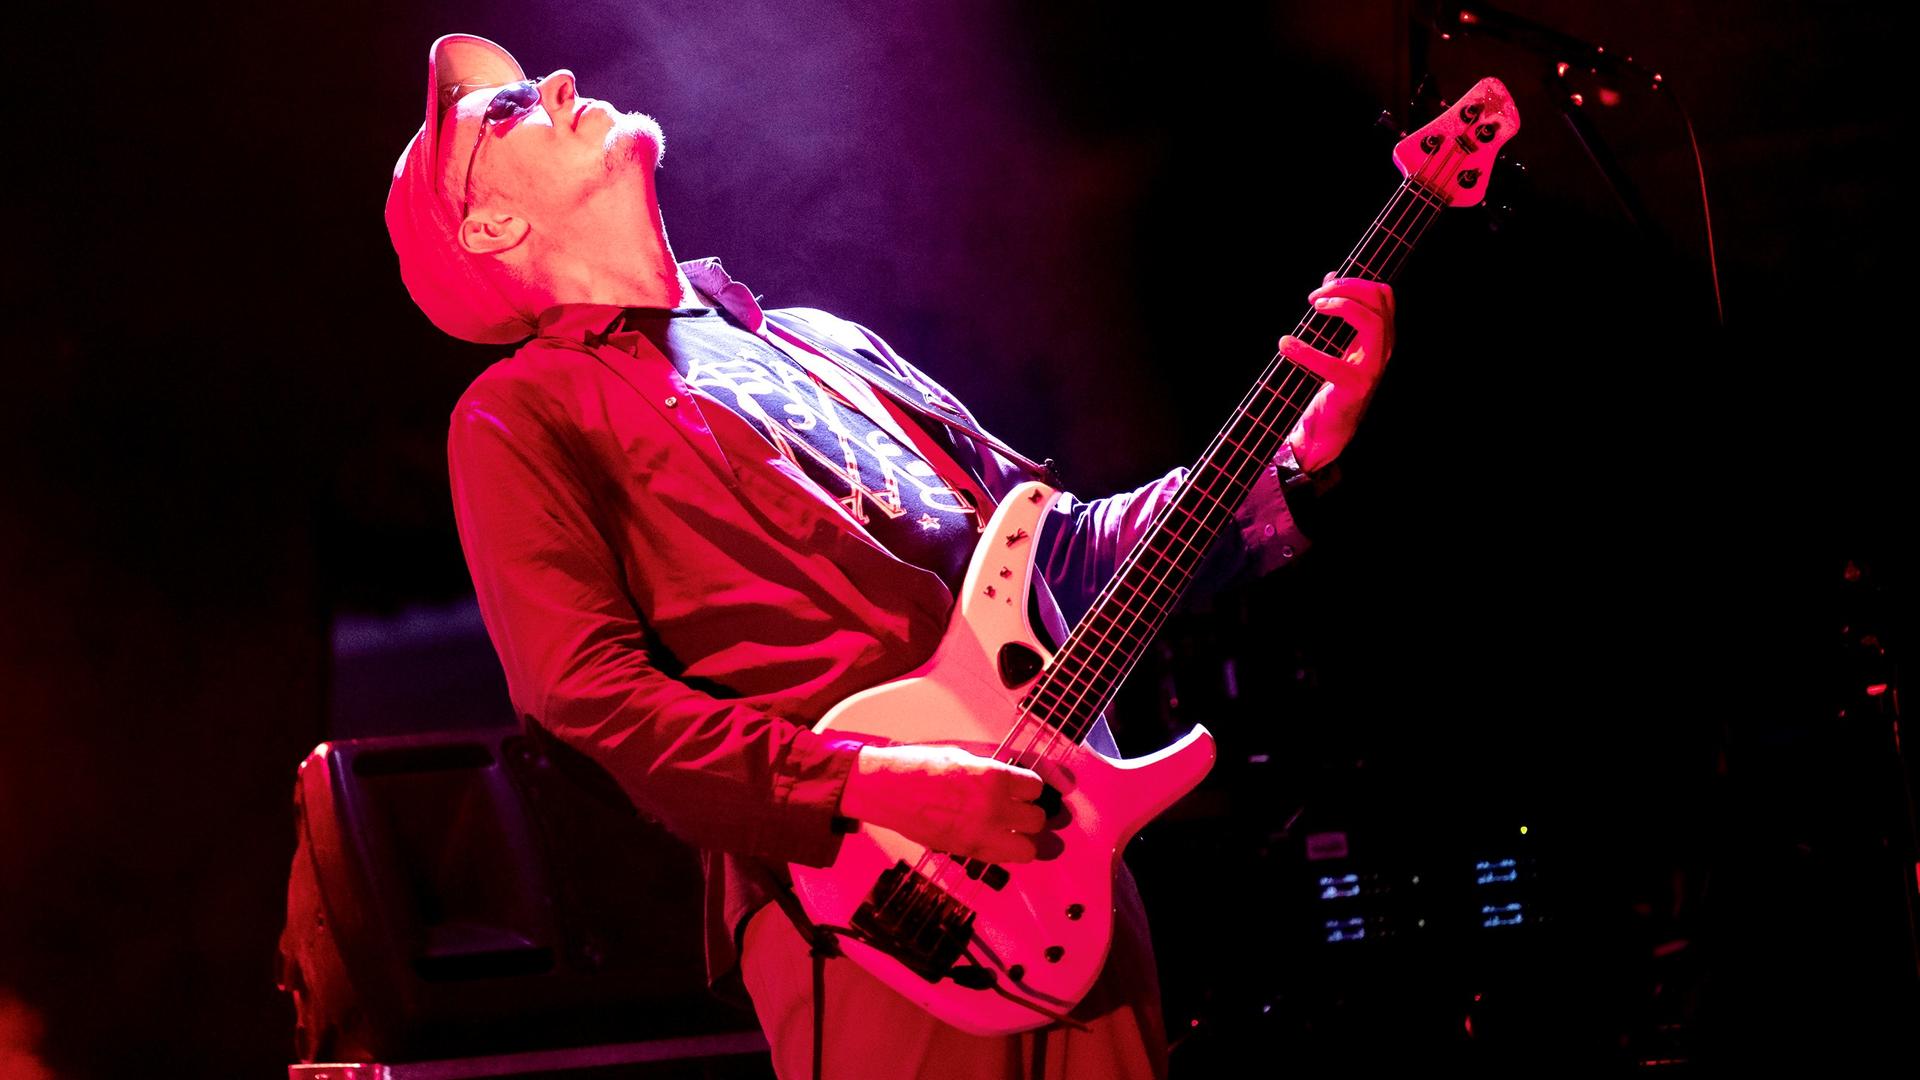 Auf dem Bild ist der Bassist Hellmut Hattler zu sehen, wie er auf einer rot erleuchteten Bühne steht und Bass spielt. 